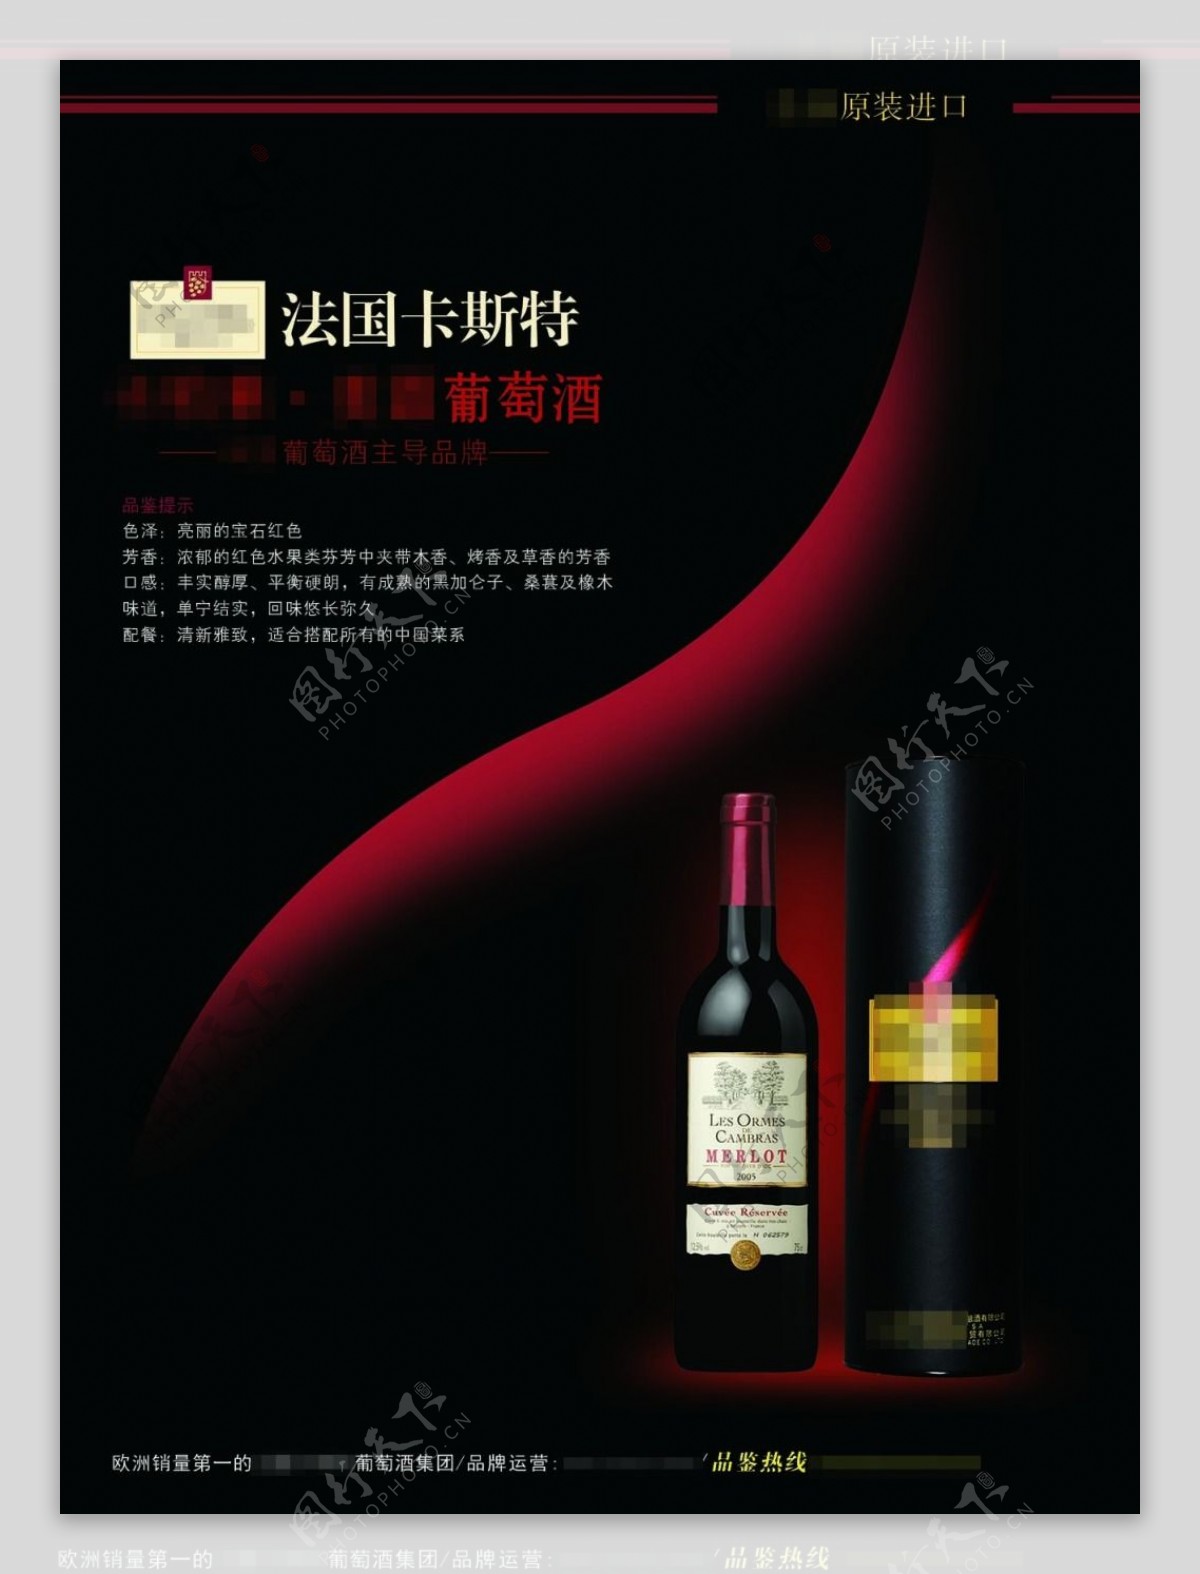 葡萄酒瓶子包装海报展板法国卡斯特红酒